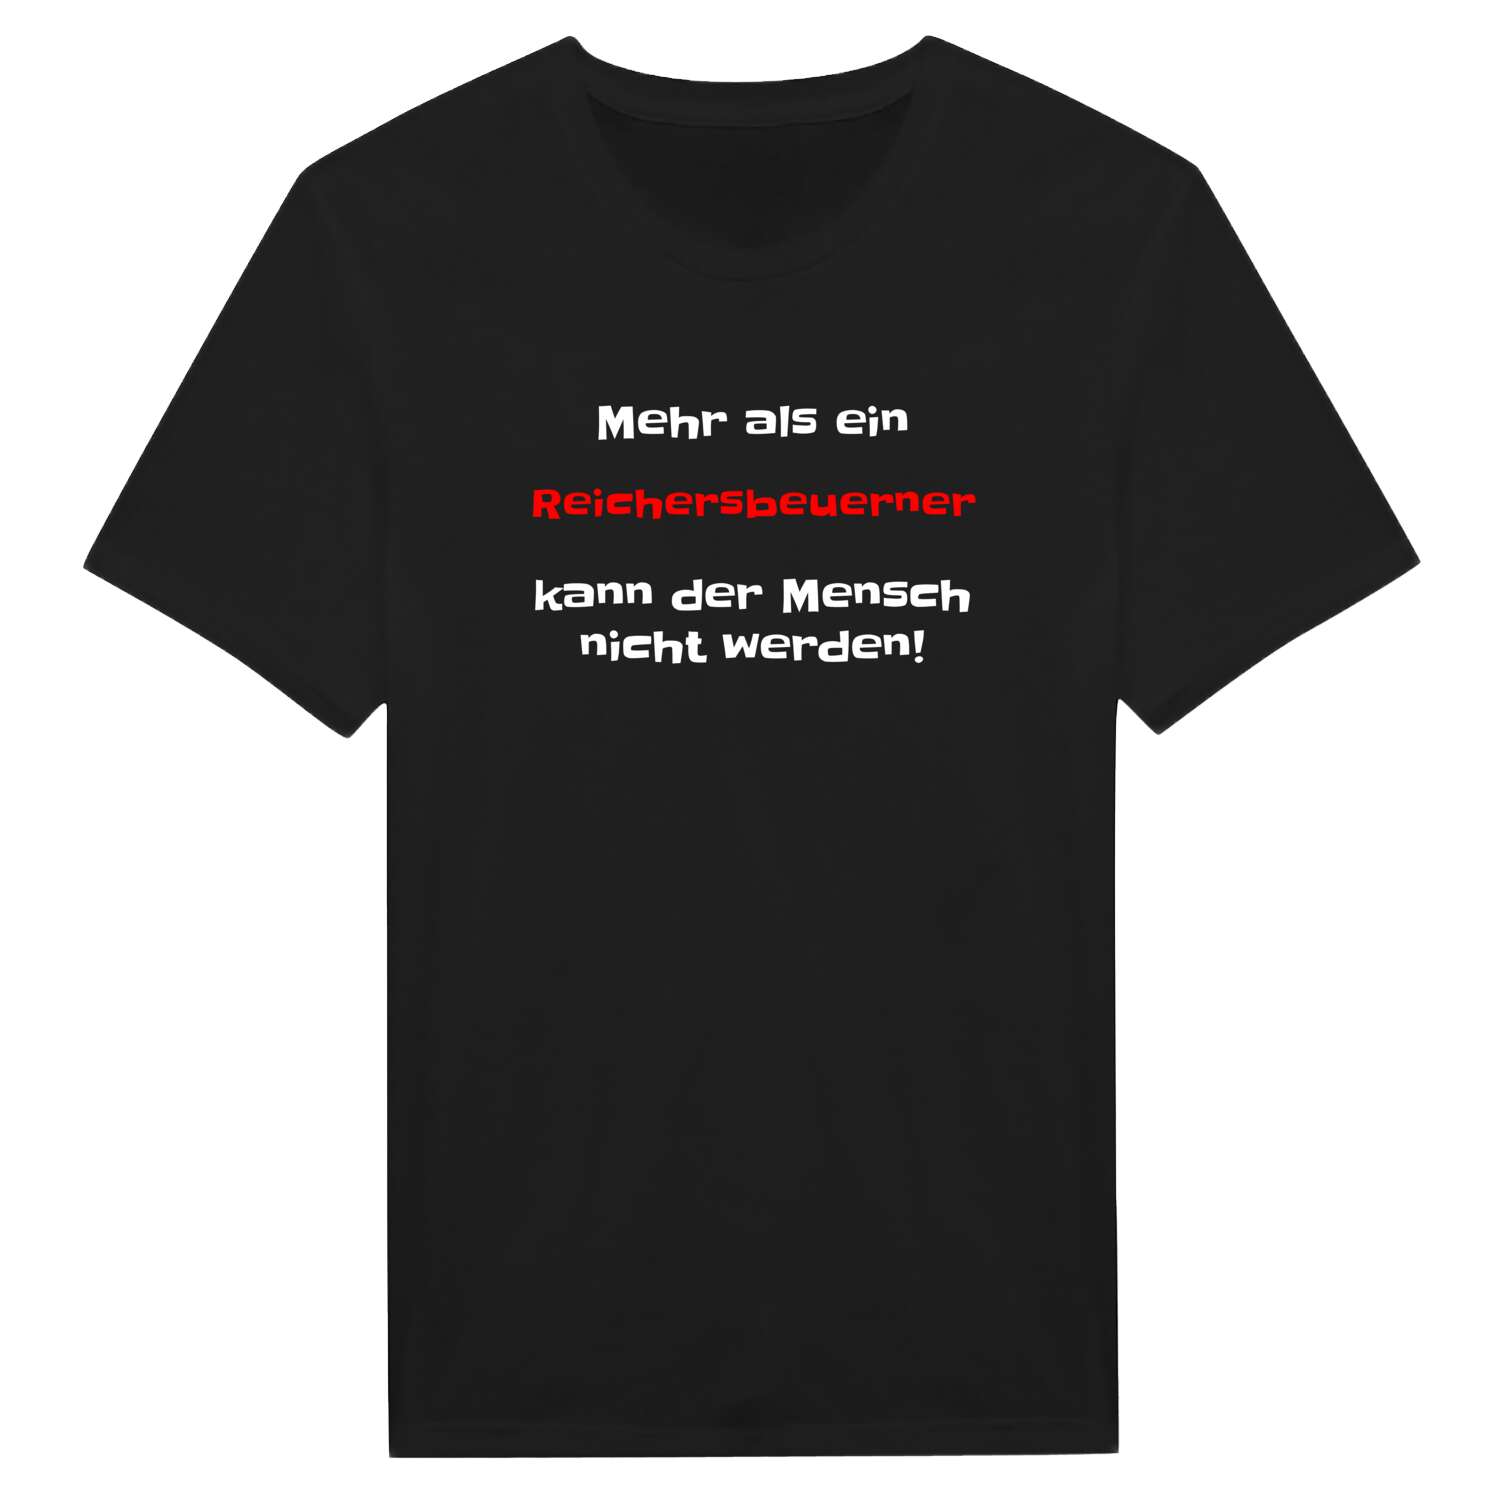 Reichersbeuern T-Shirt »Mehr als ein«